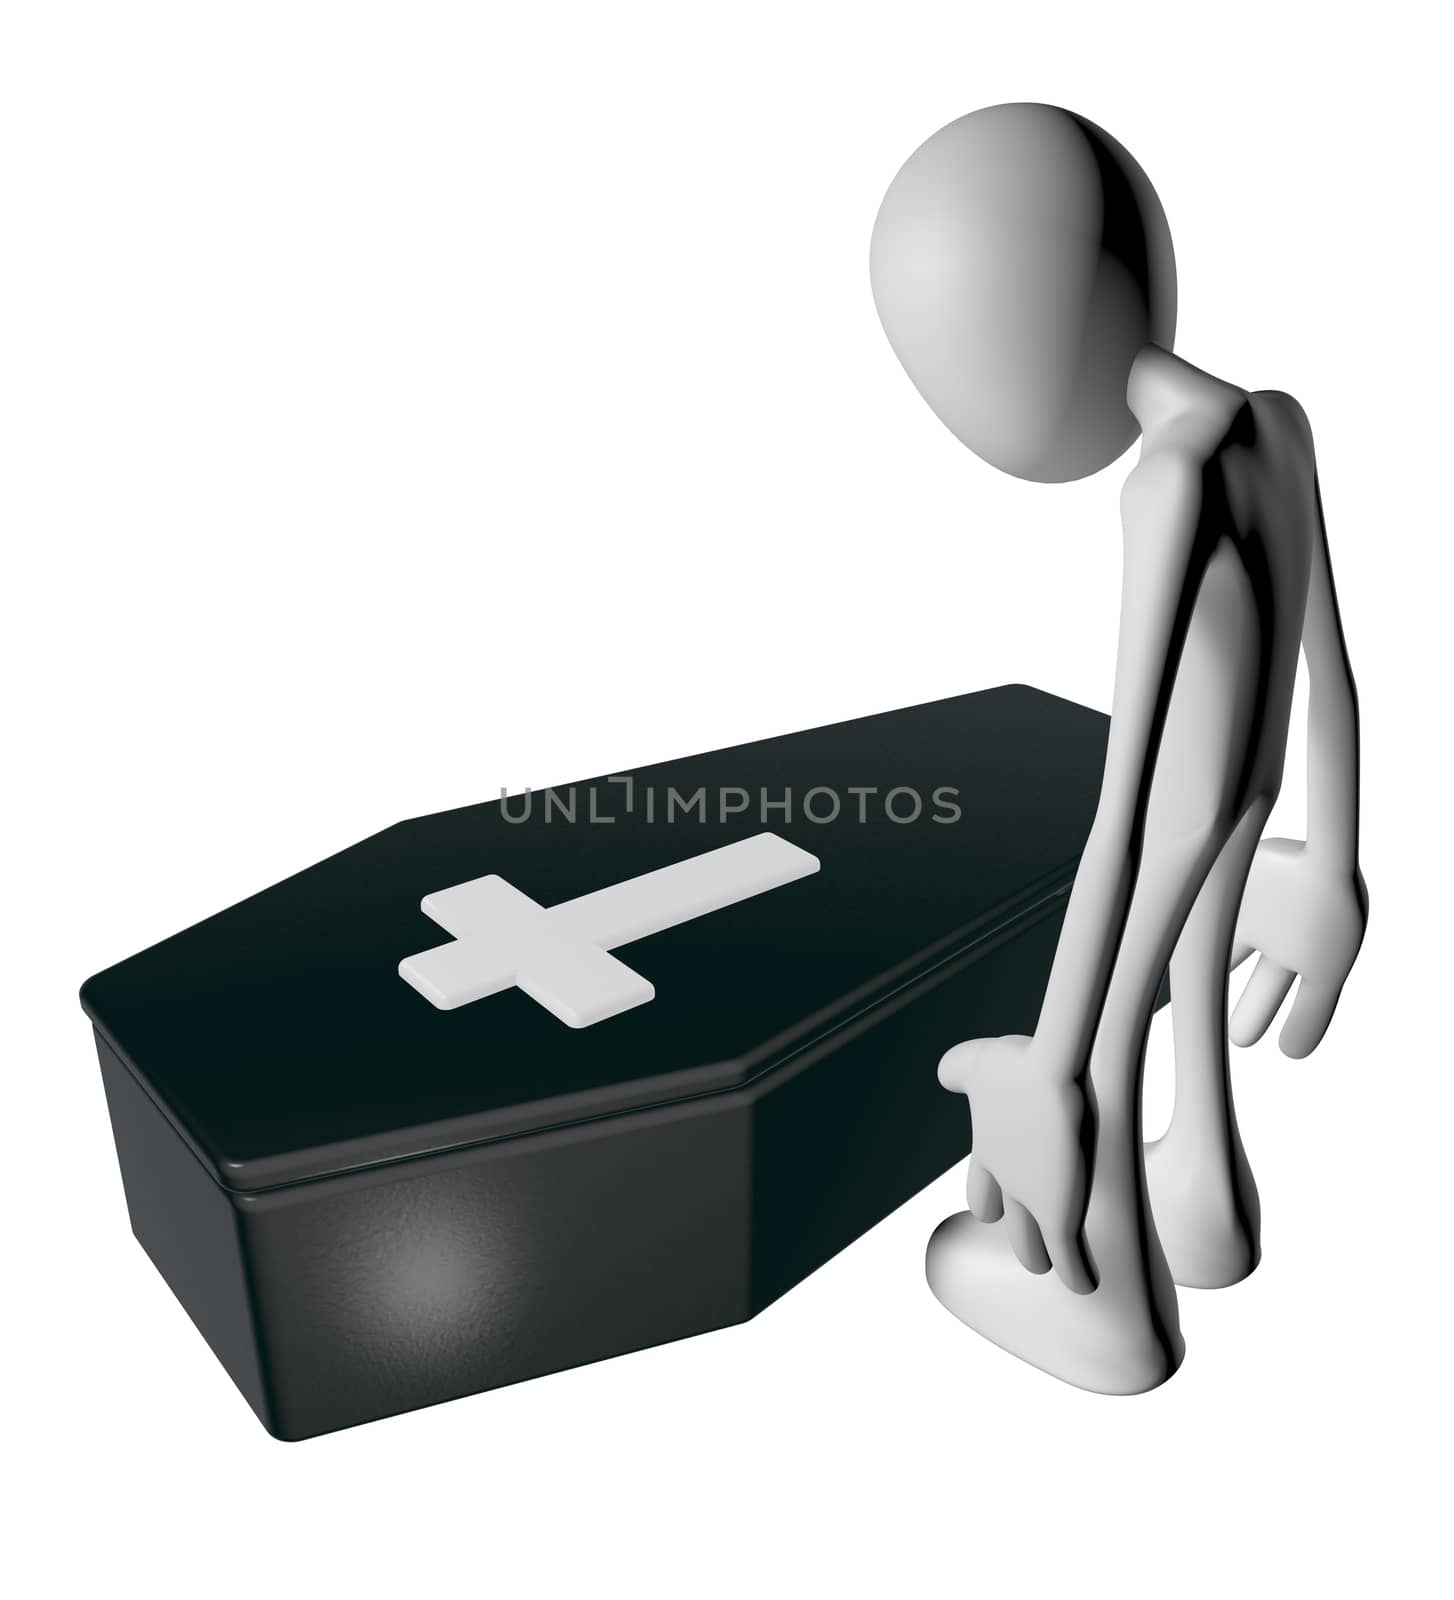 black casket whit christian cross and white guy - 3d illustration